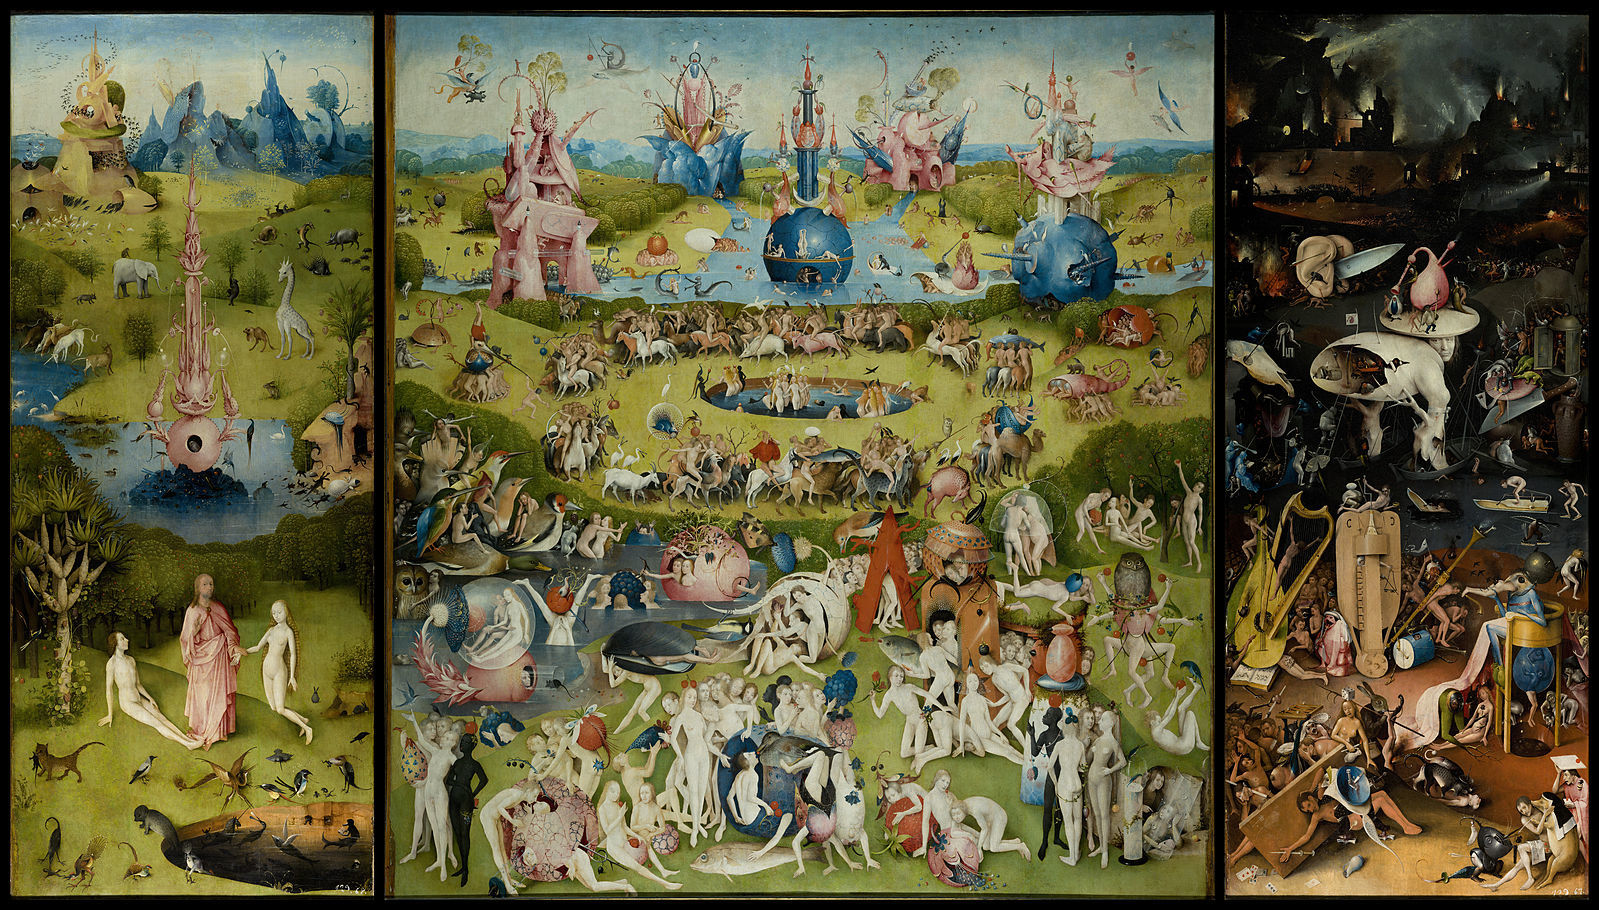 プラド美術館のヒエロニムス・ボス《快楽の園》。右端は地獄絵図です。